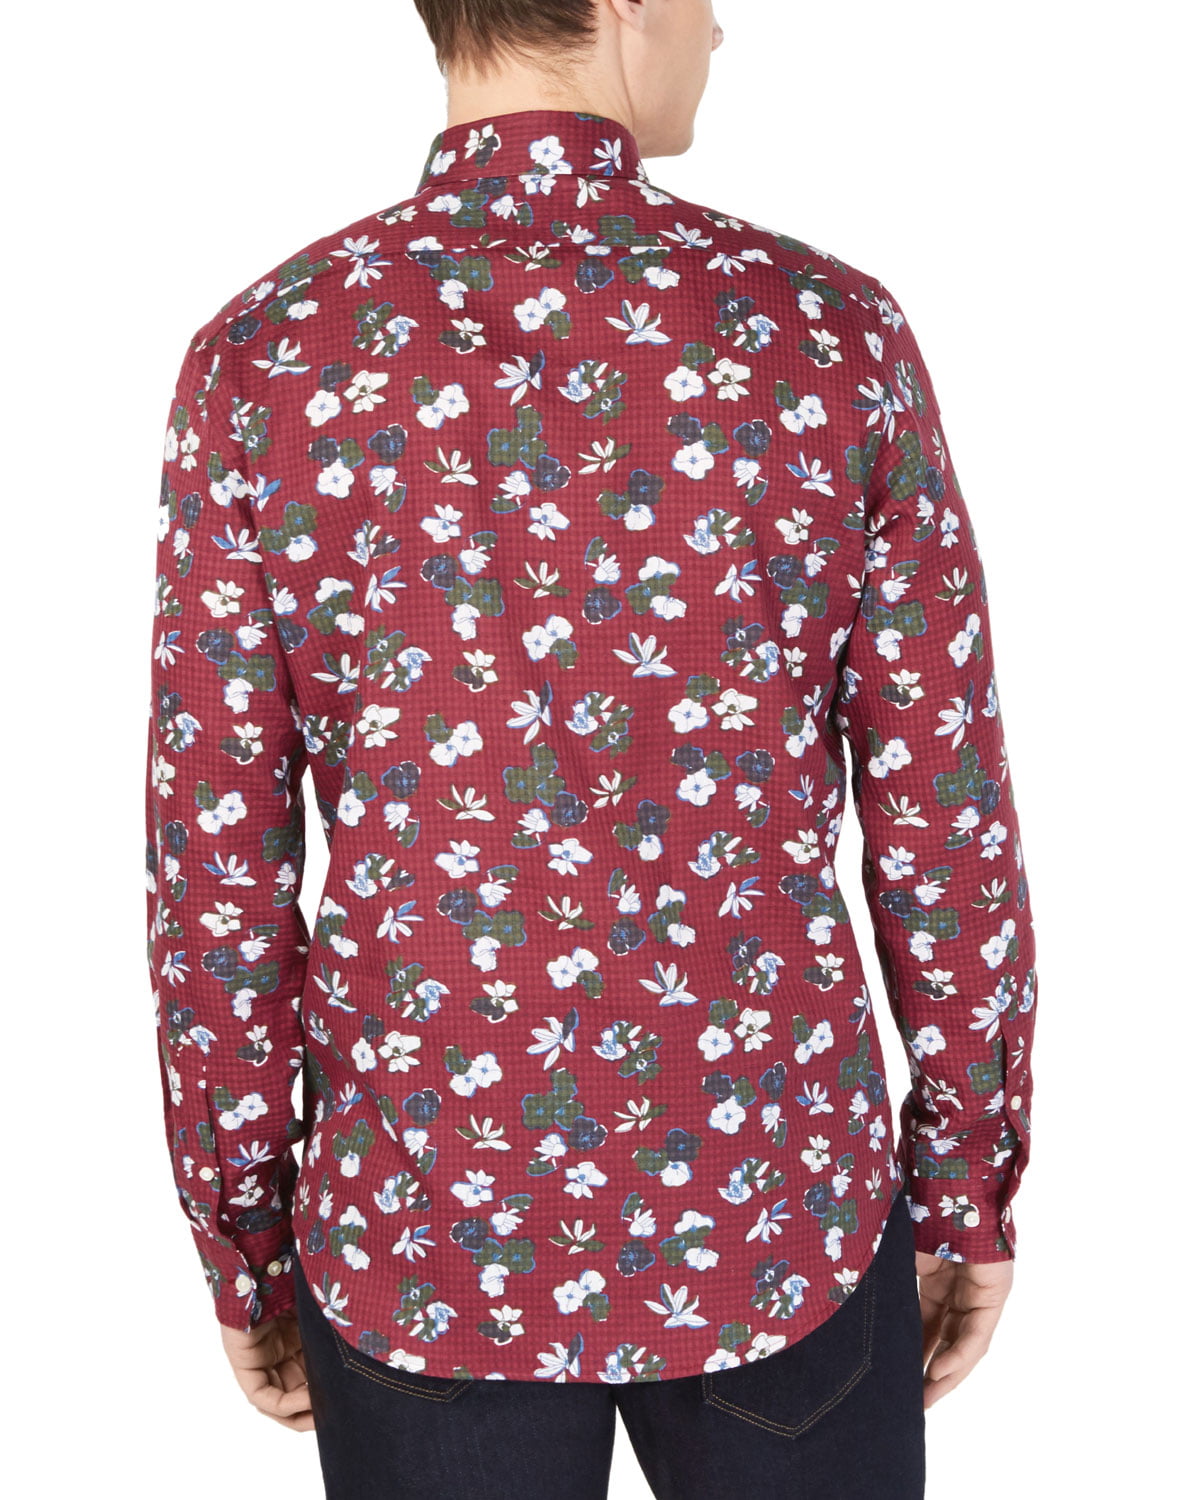 Michael Kors Men's Slim Fit Button Front Floral Shirt Raspberry Size XL 